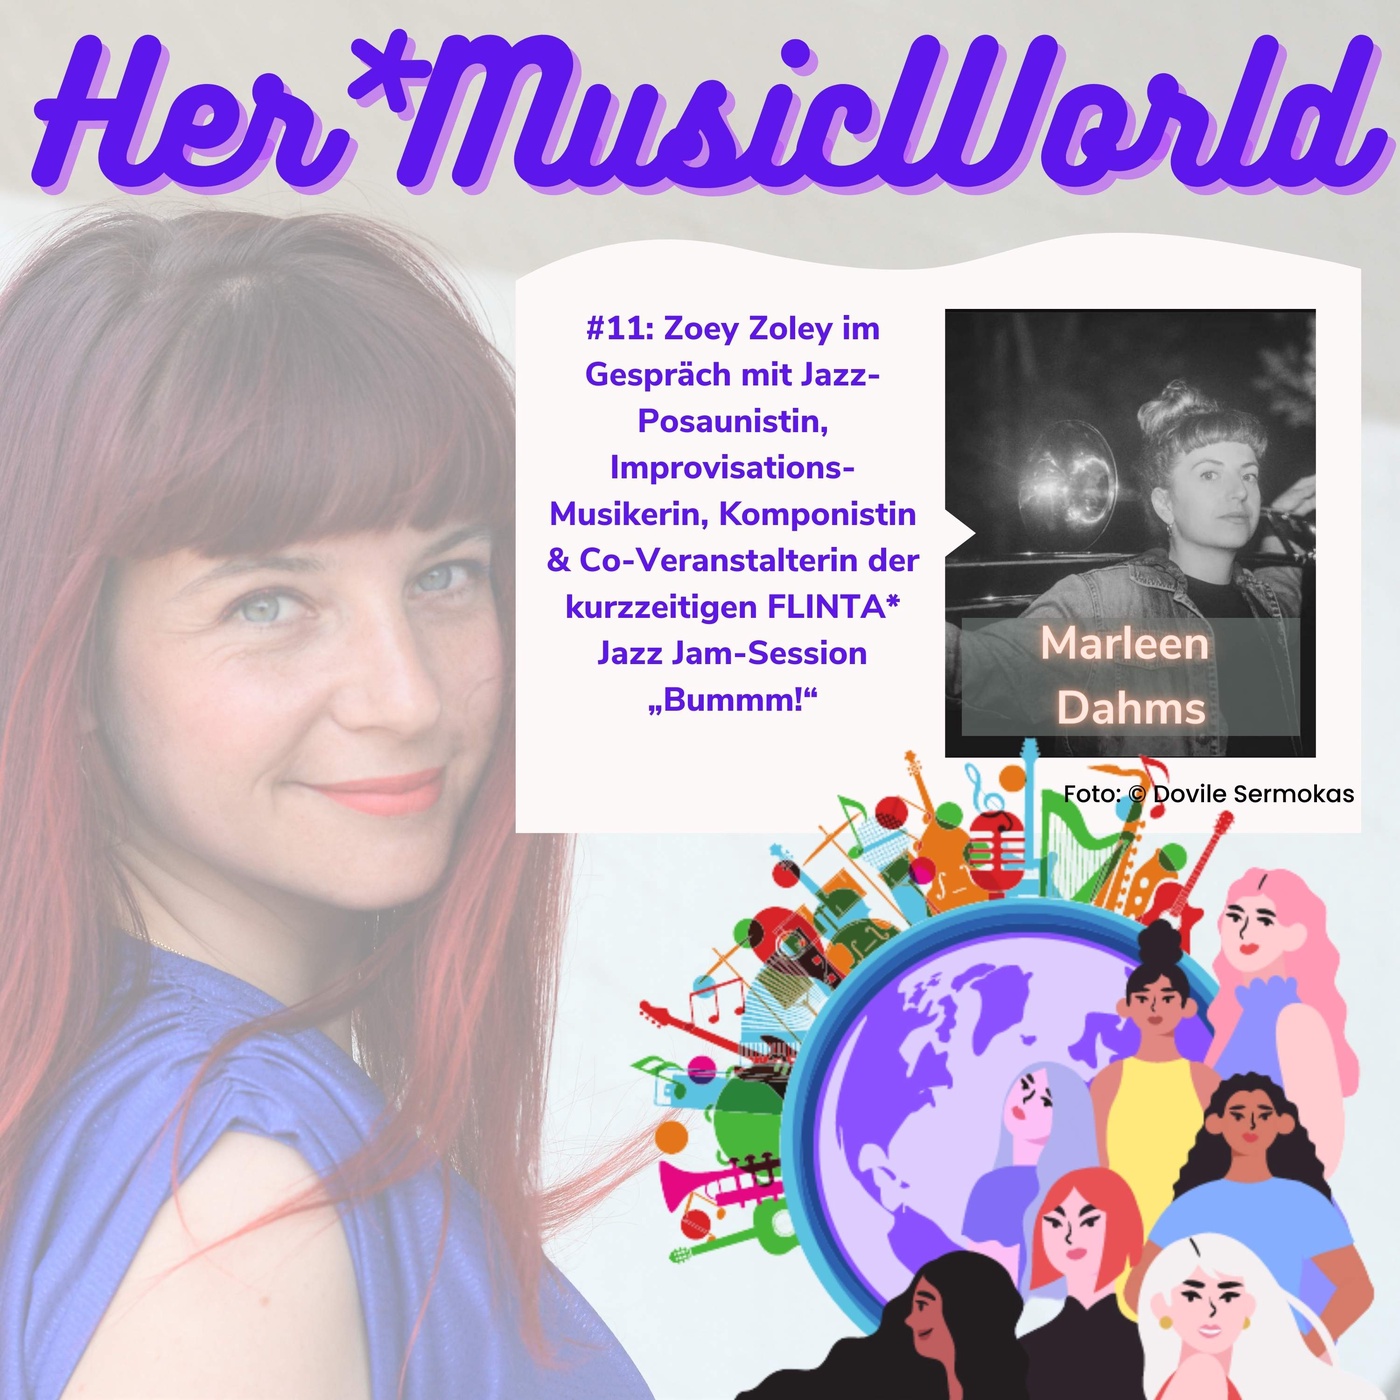 #11 HerMusicWorld Podcast mit Gästin Marleen Dahms